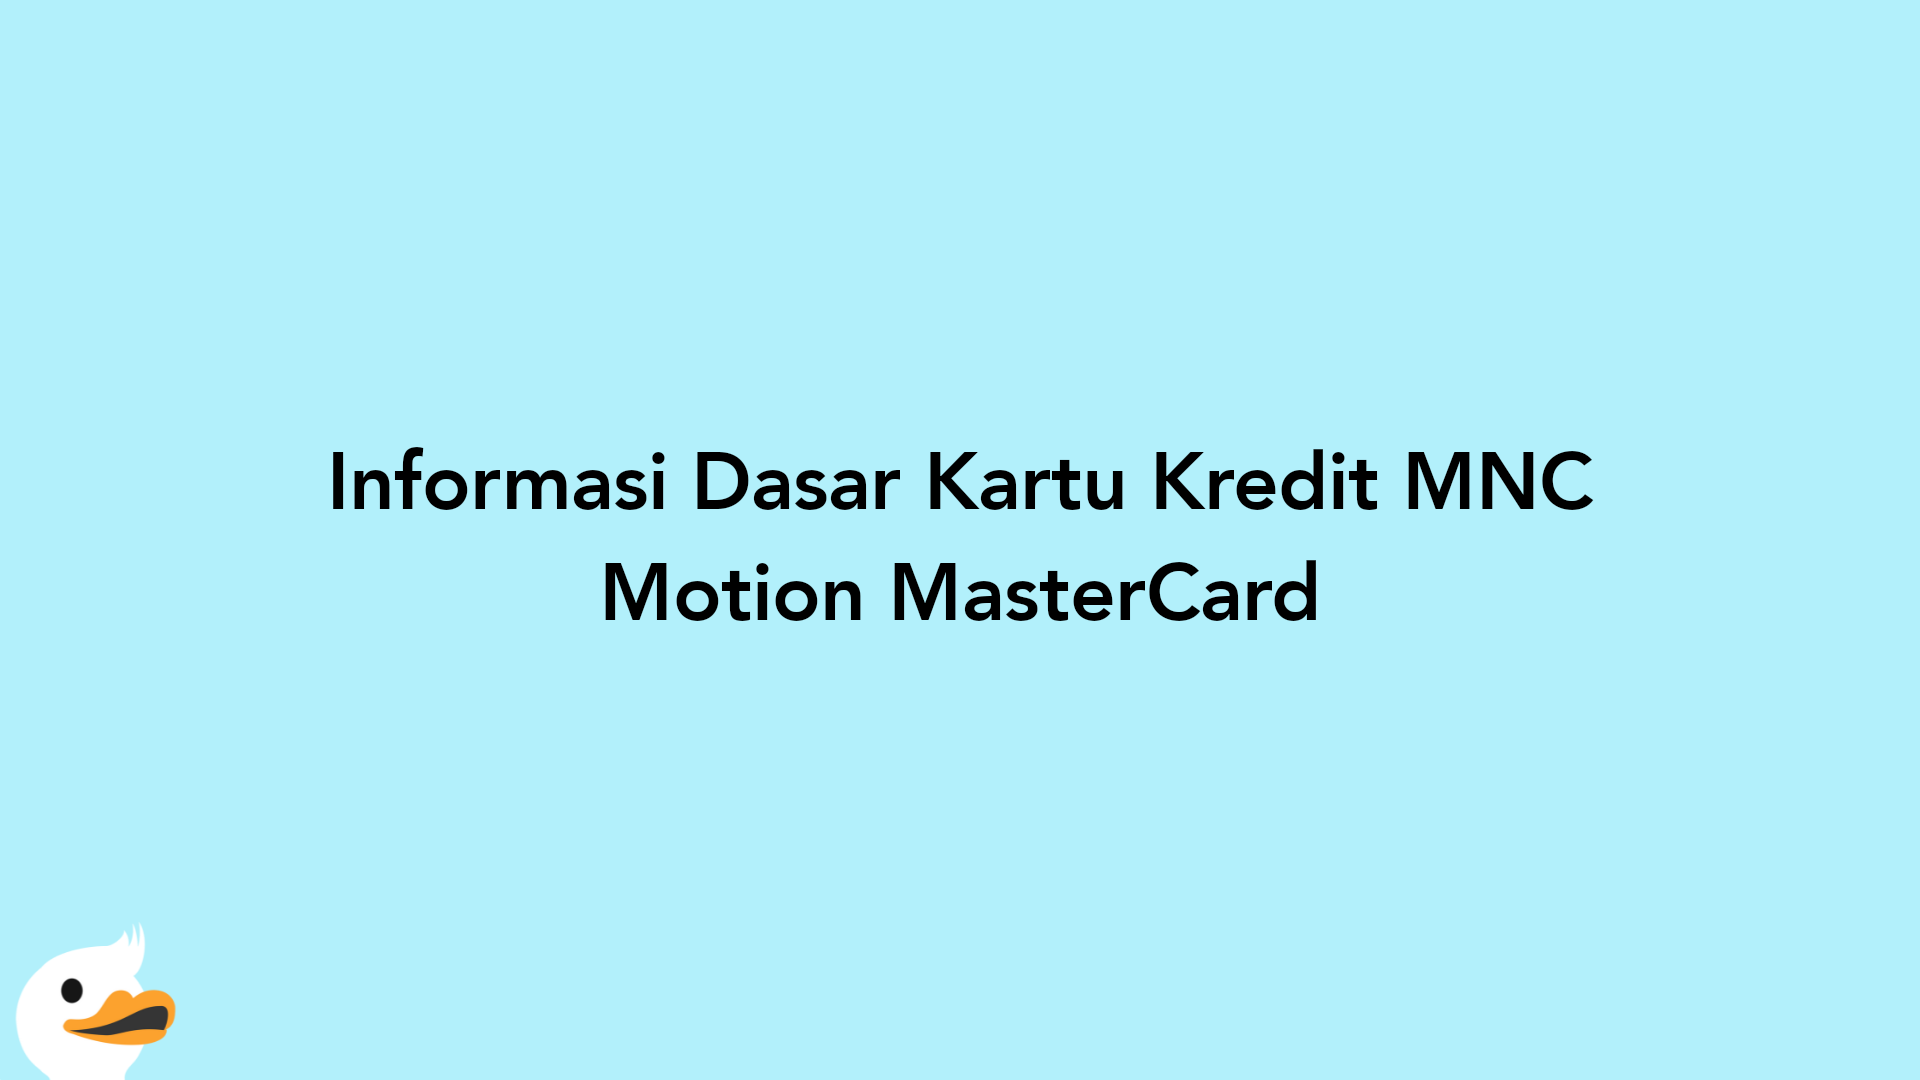 Informasi Dasar Kartu Kredit MNC Motion MasterCard